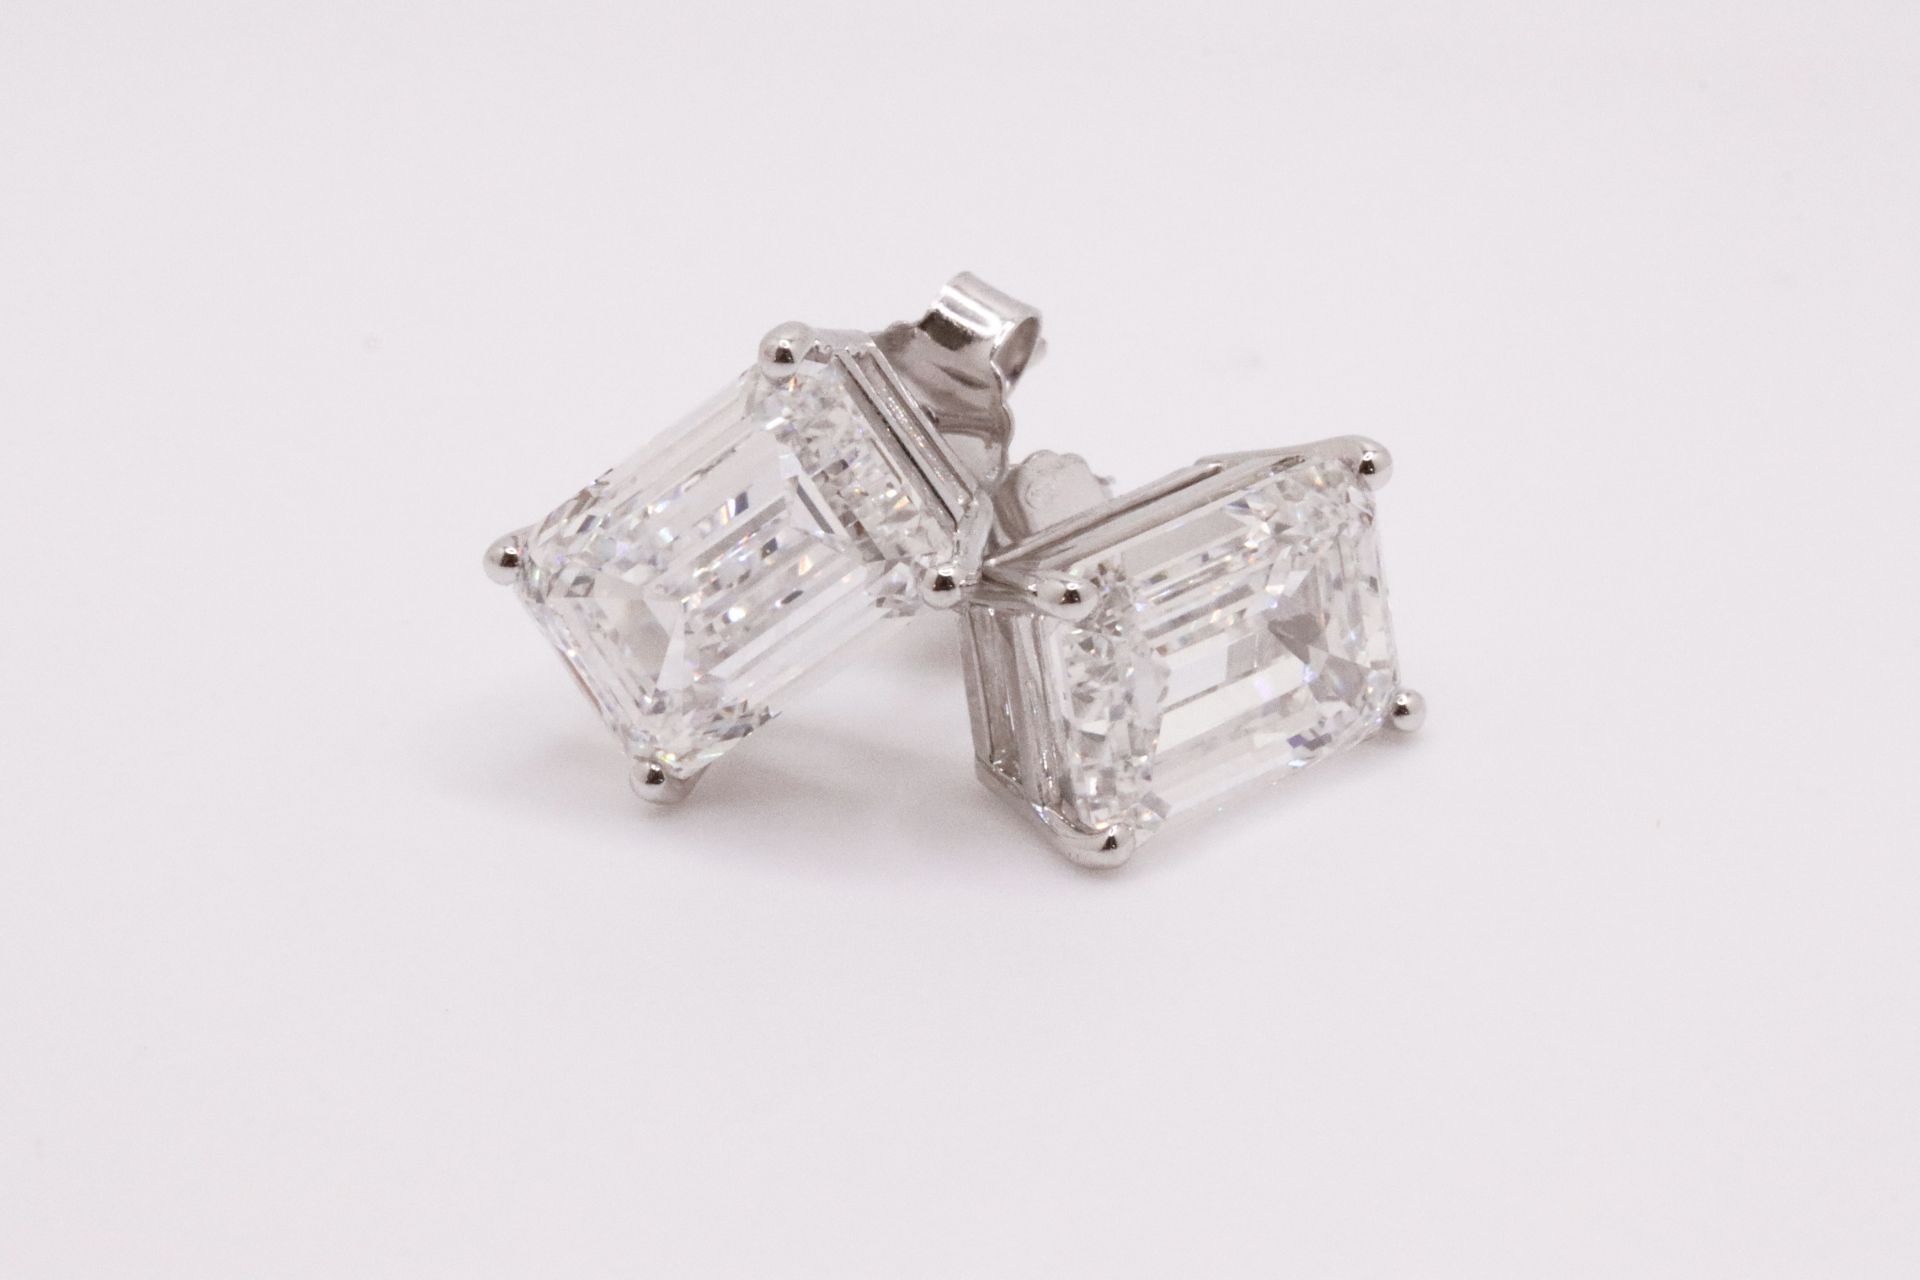 Emerald Cut 9.83 Carat 18kt White Gold Diamond Earrings E Colour VVS2 Clarity - IGI